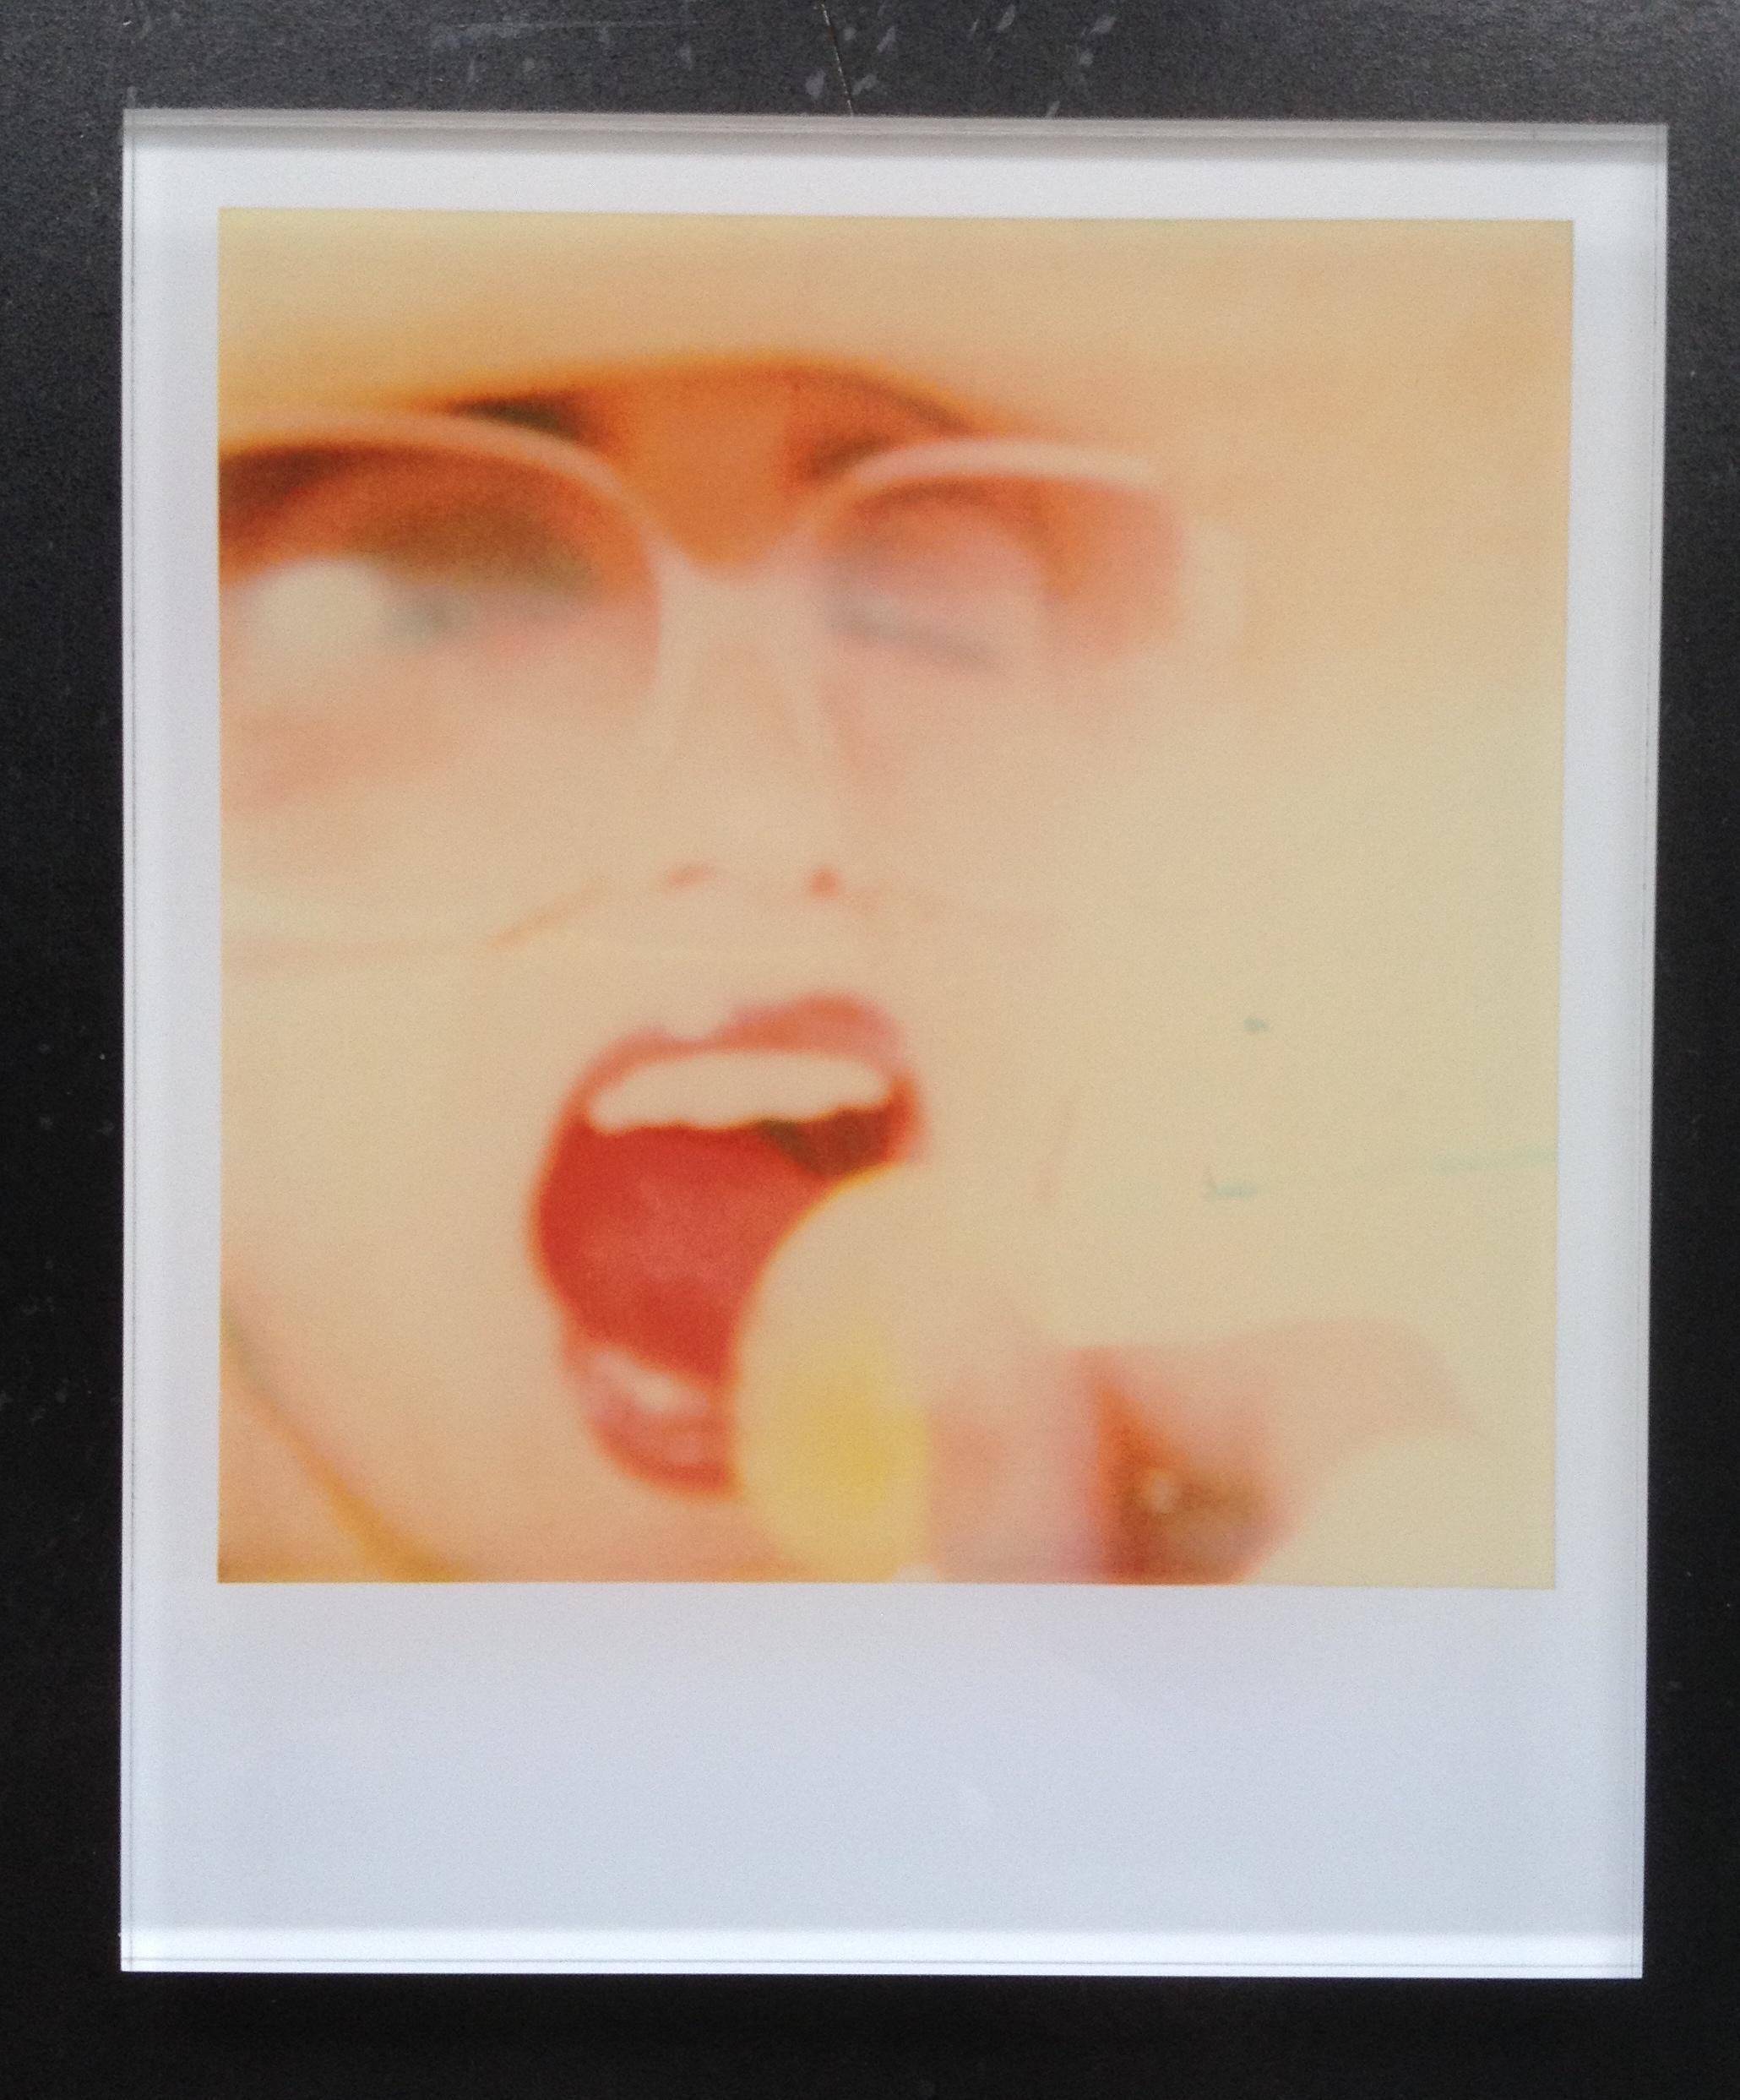 Mini Lollipop monté avec Radha Mitchell, basé sur un Polaroid